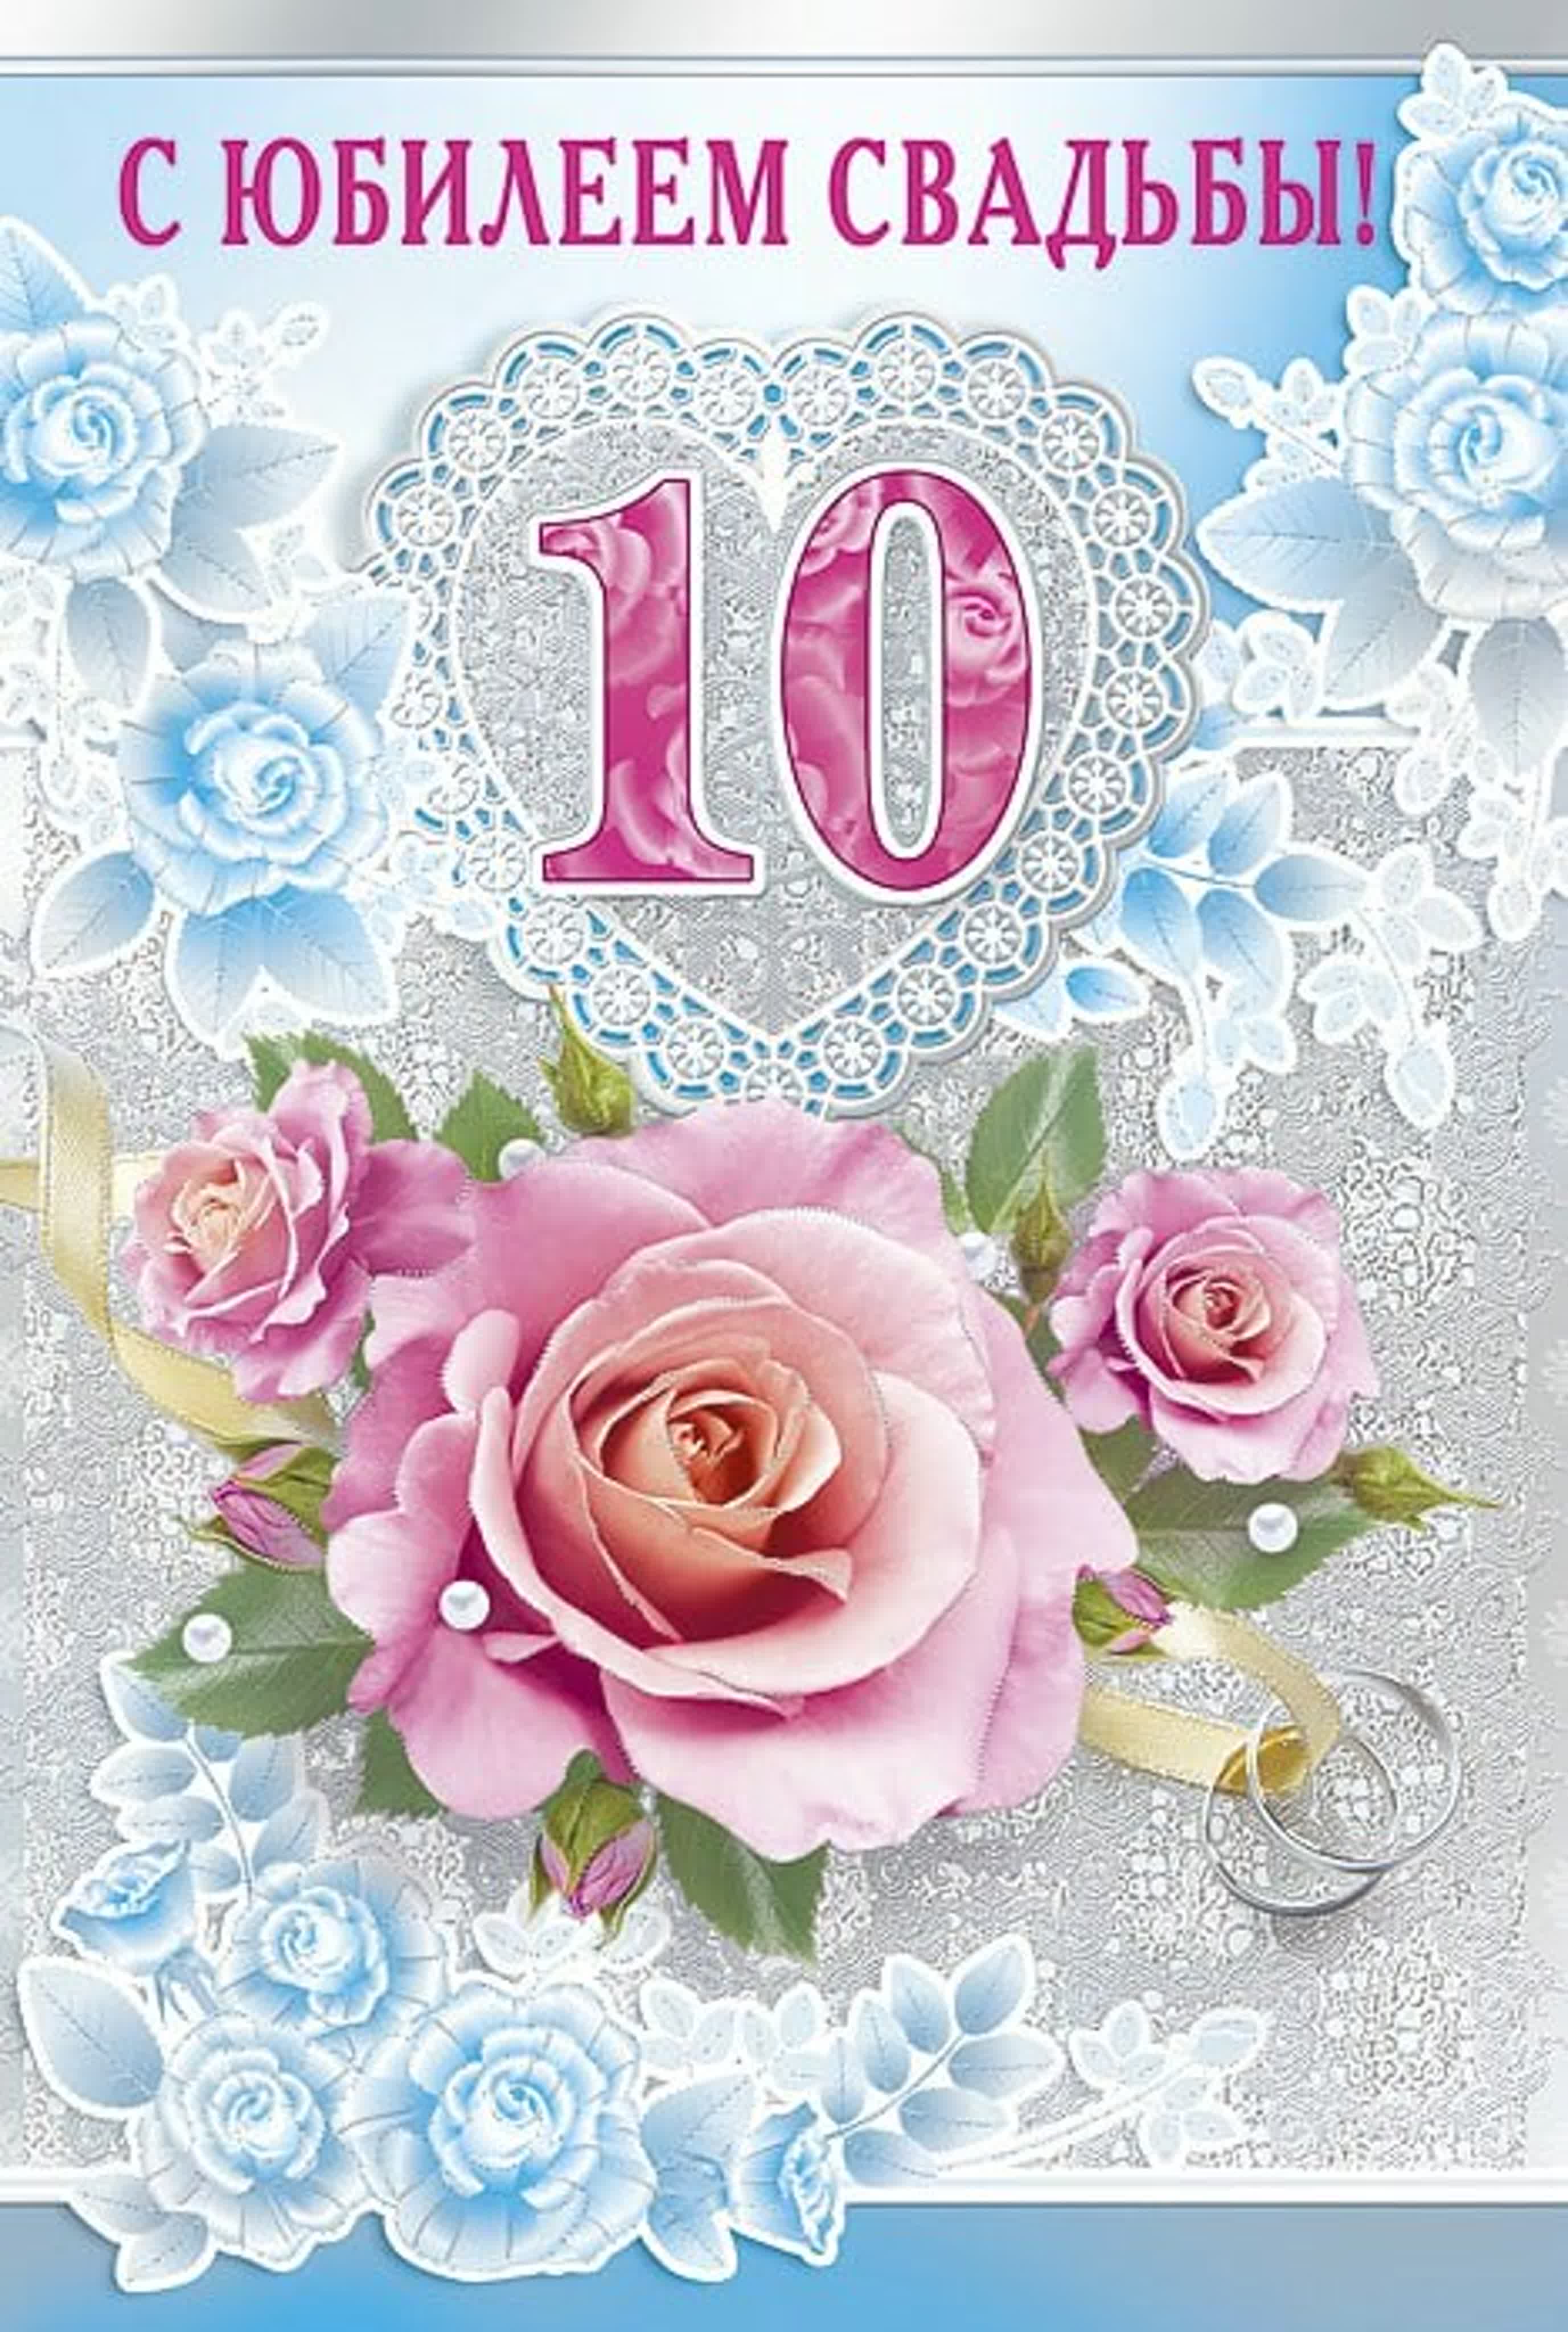 Поздравить свадьбы 10. 10 Лет свадьбы. 10 Лет свадьбы поздравления. С юбилеем свадьбы 10 лет. Розовая свадьба.